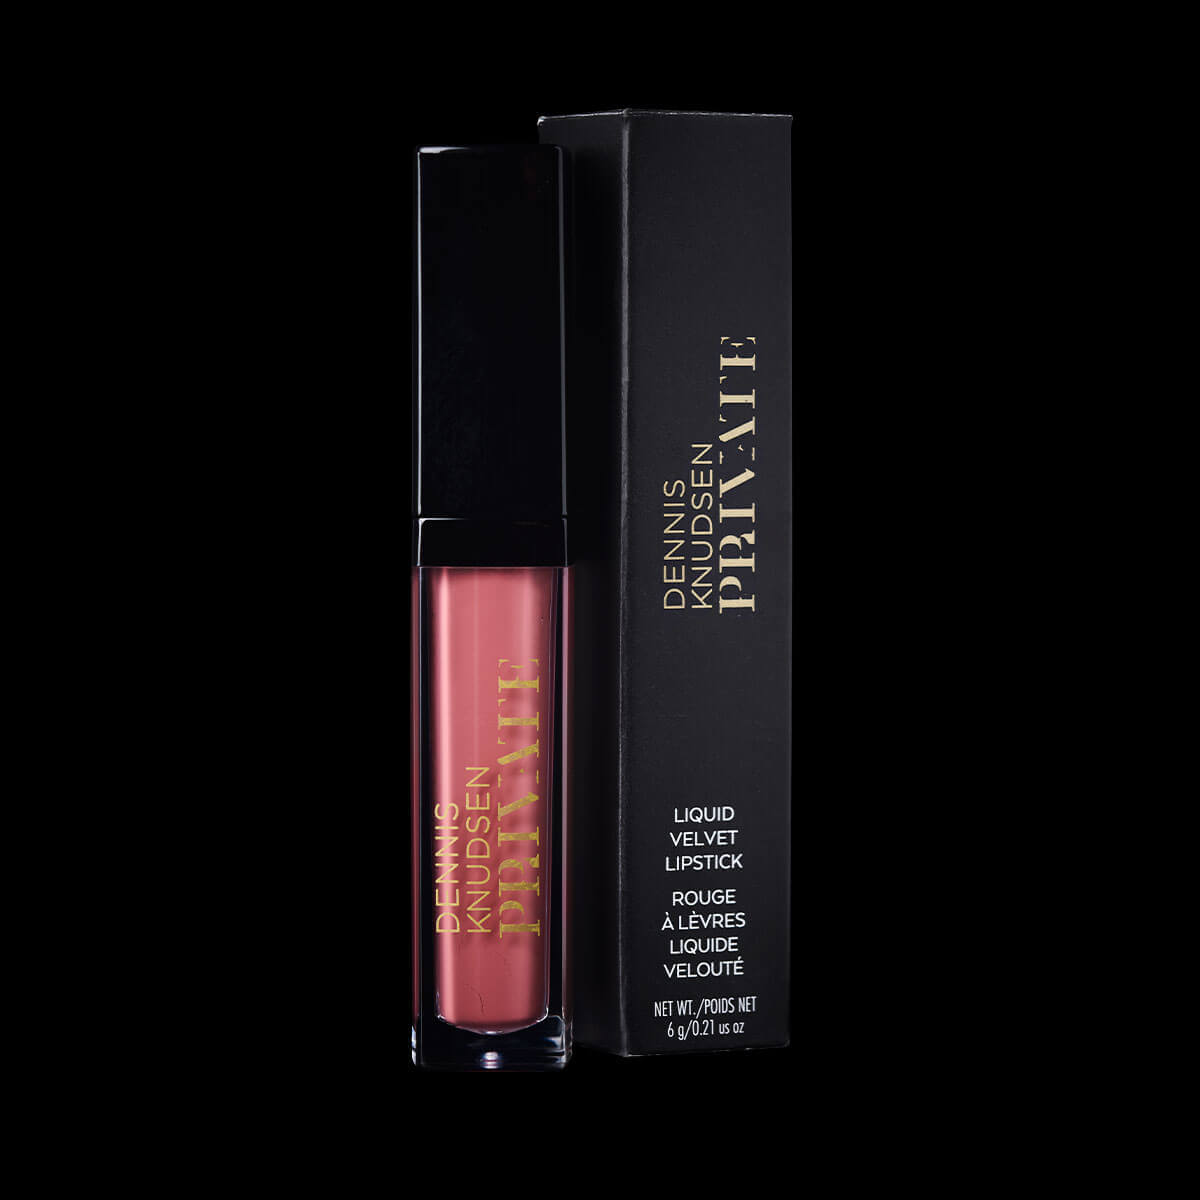 DKPrivate Lipstick Liquid Velvet no 830 box chit chat